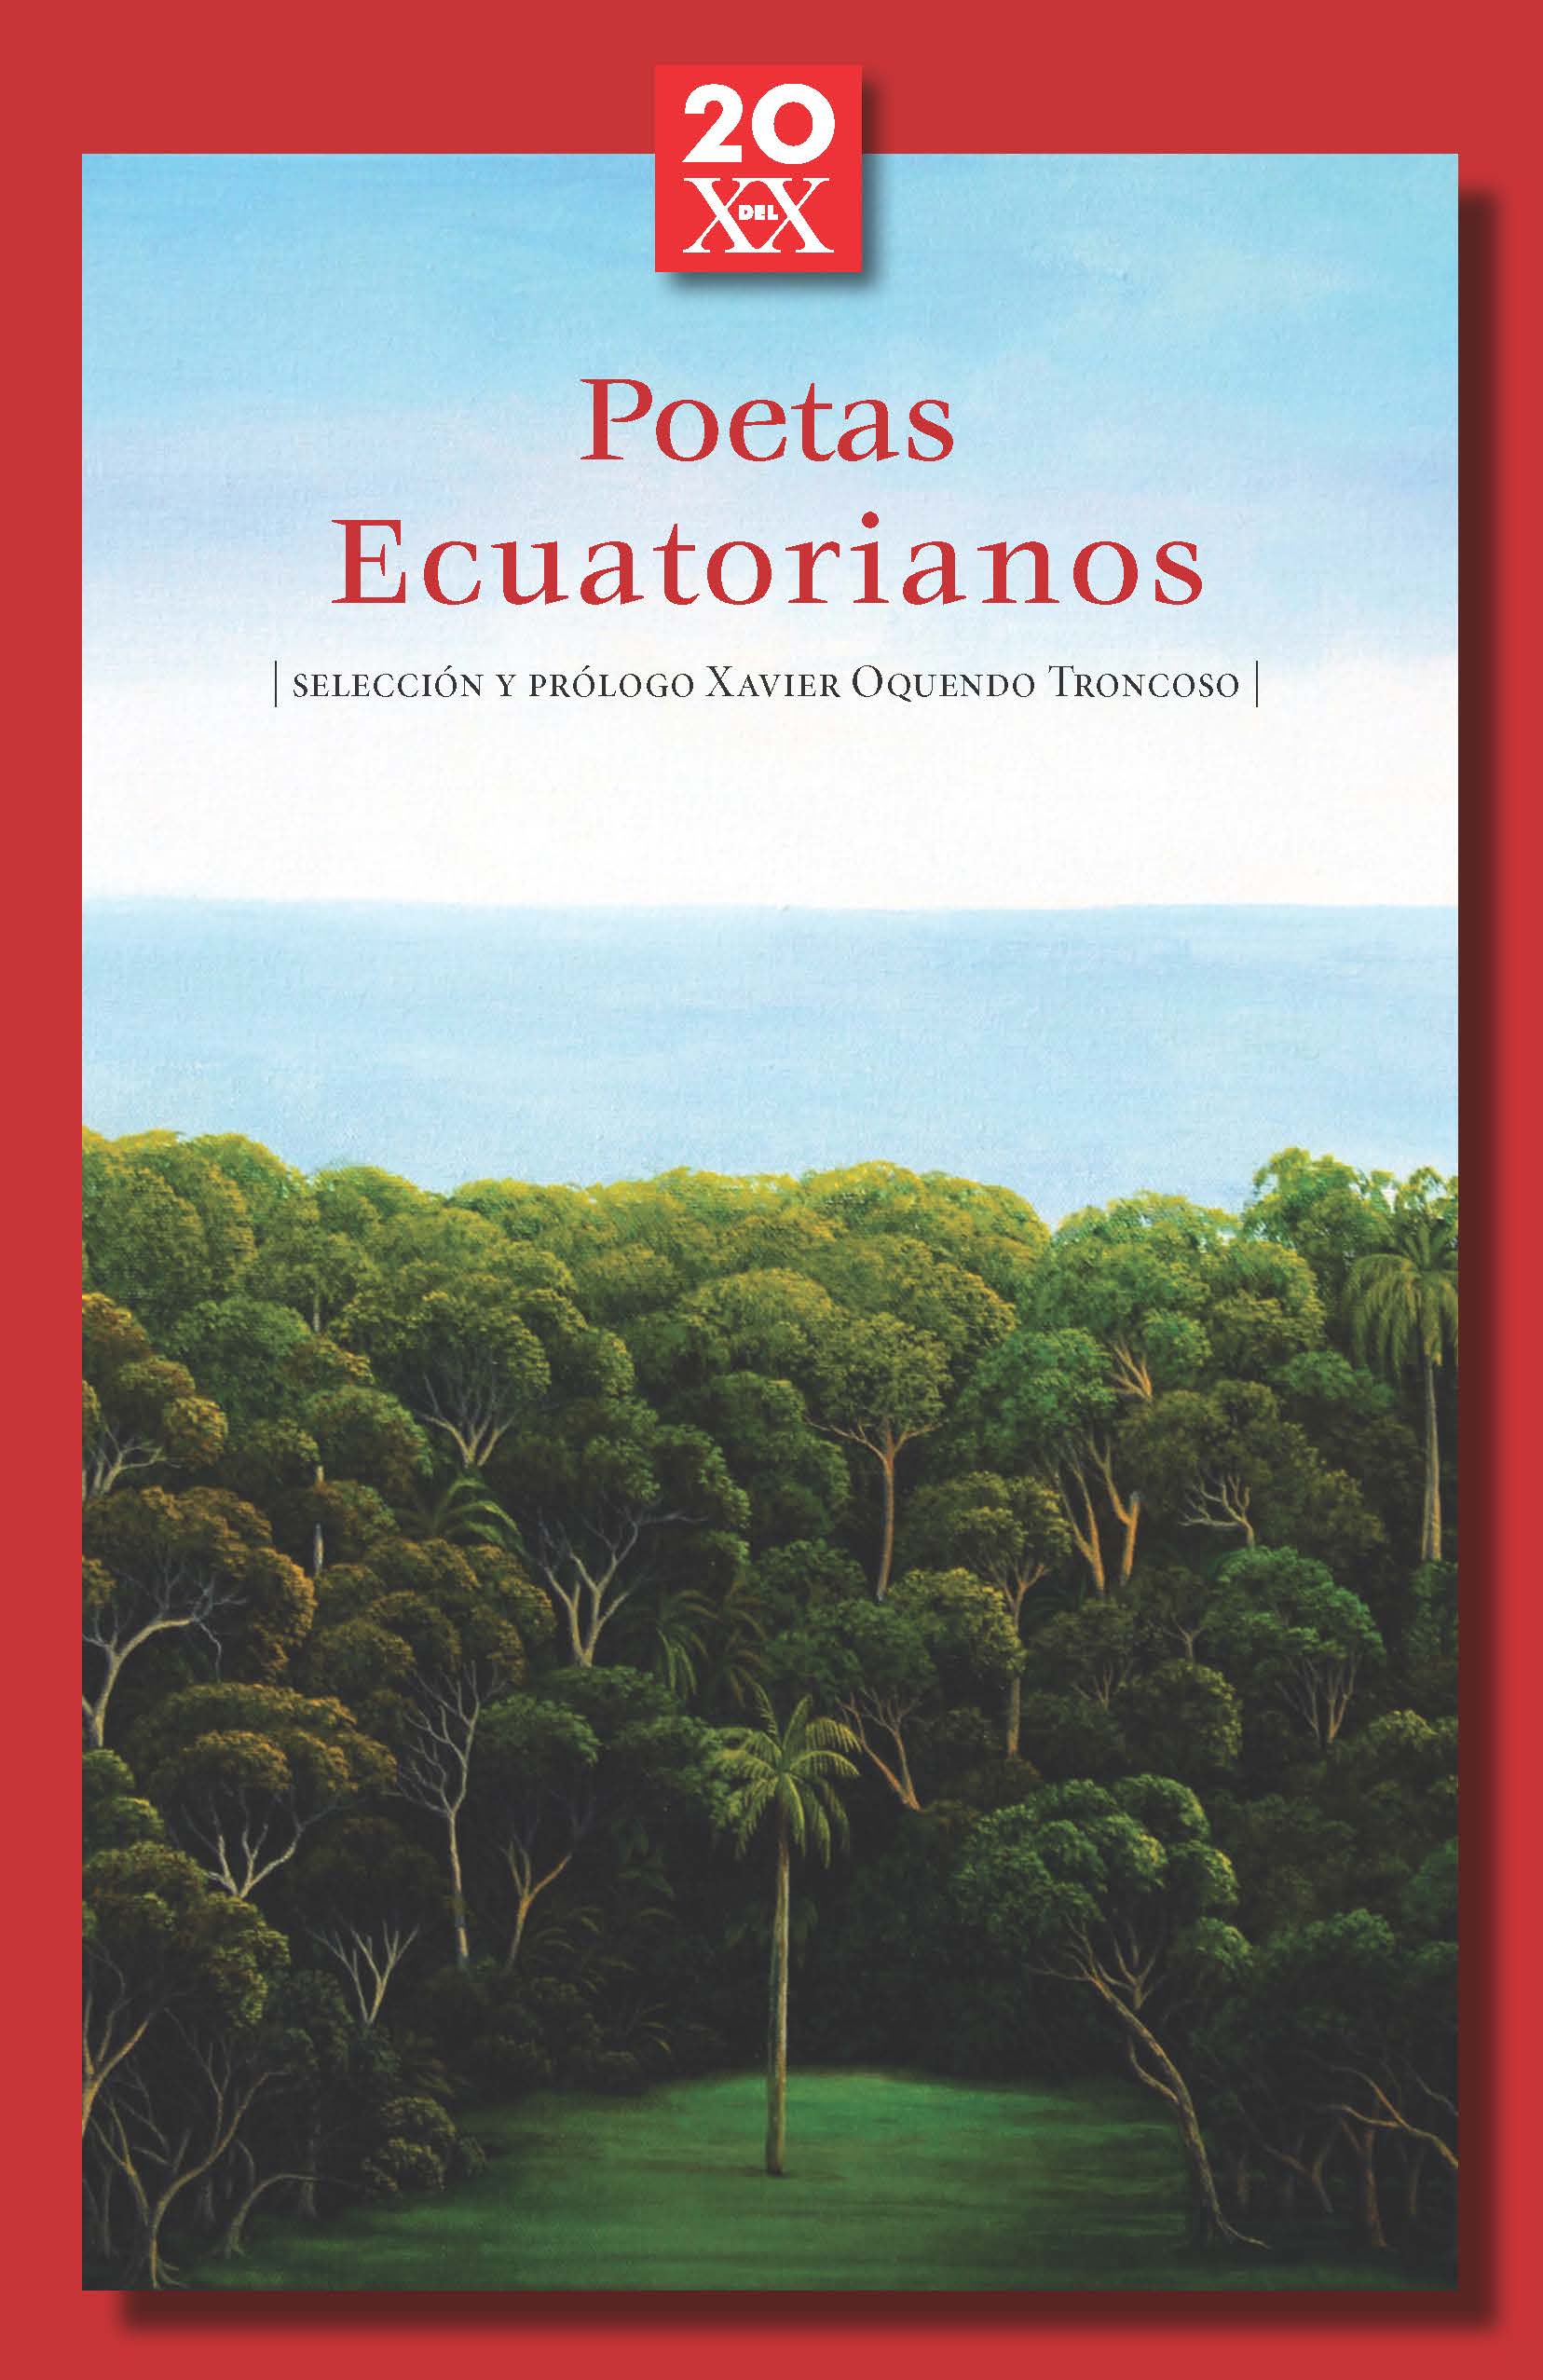 Estudio: Poetas siglo XX Ecuador - Ómnibus, Revista intercultural n. 43